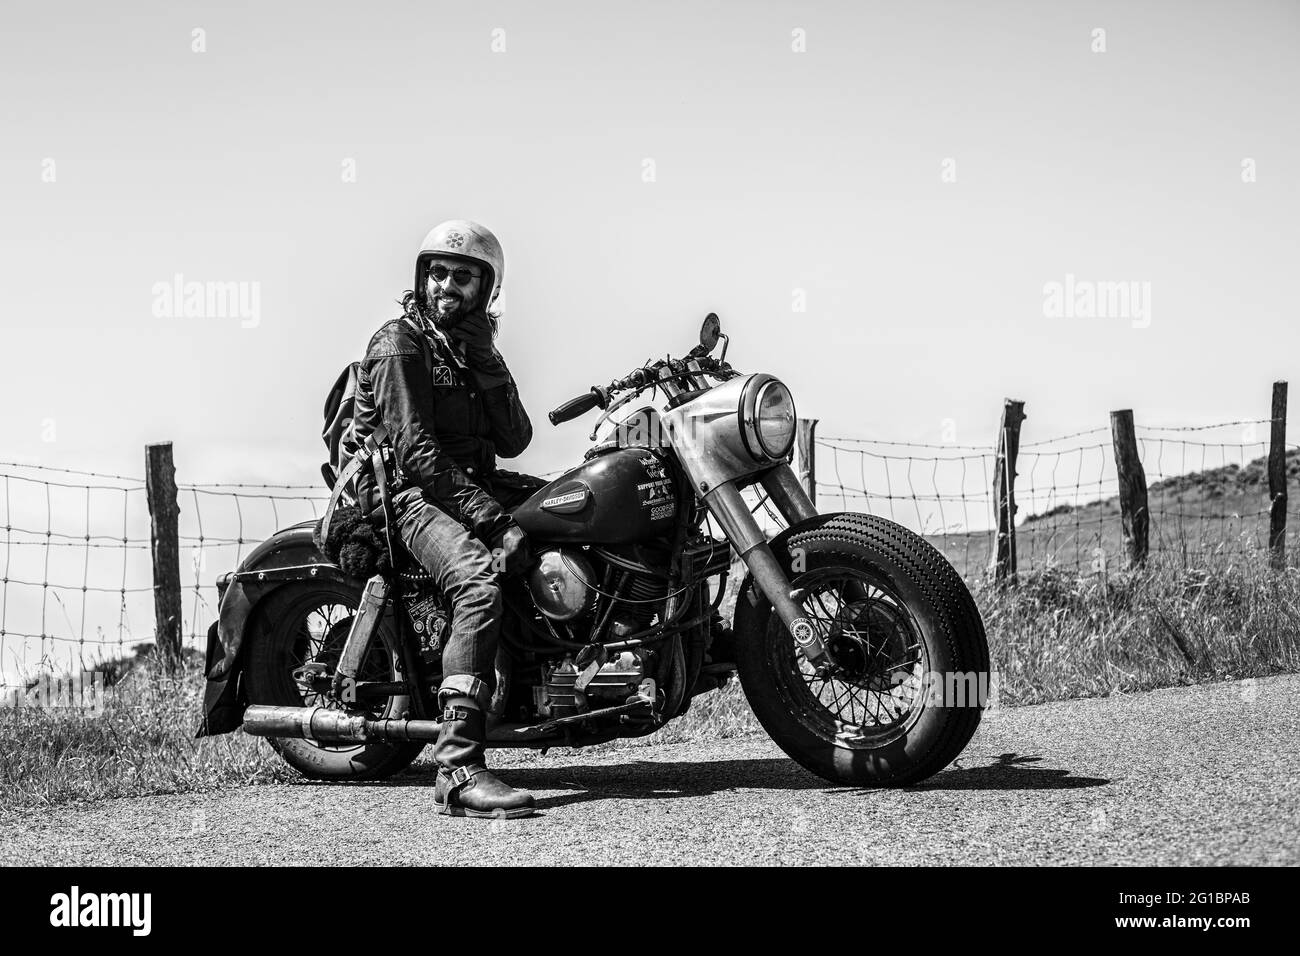 David Borras fonder von El Solitario MC und seiner Harley Davidson 58 Panhead beim Wheels and Waves Festival in Biarritz, Frankreich. Stockfoto